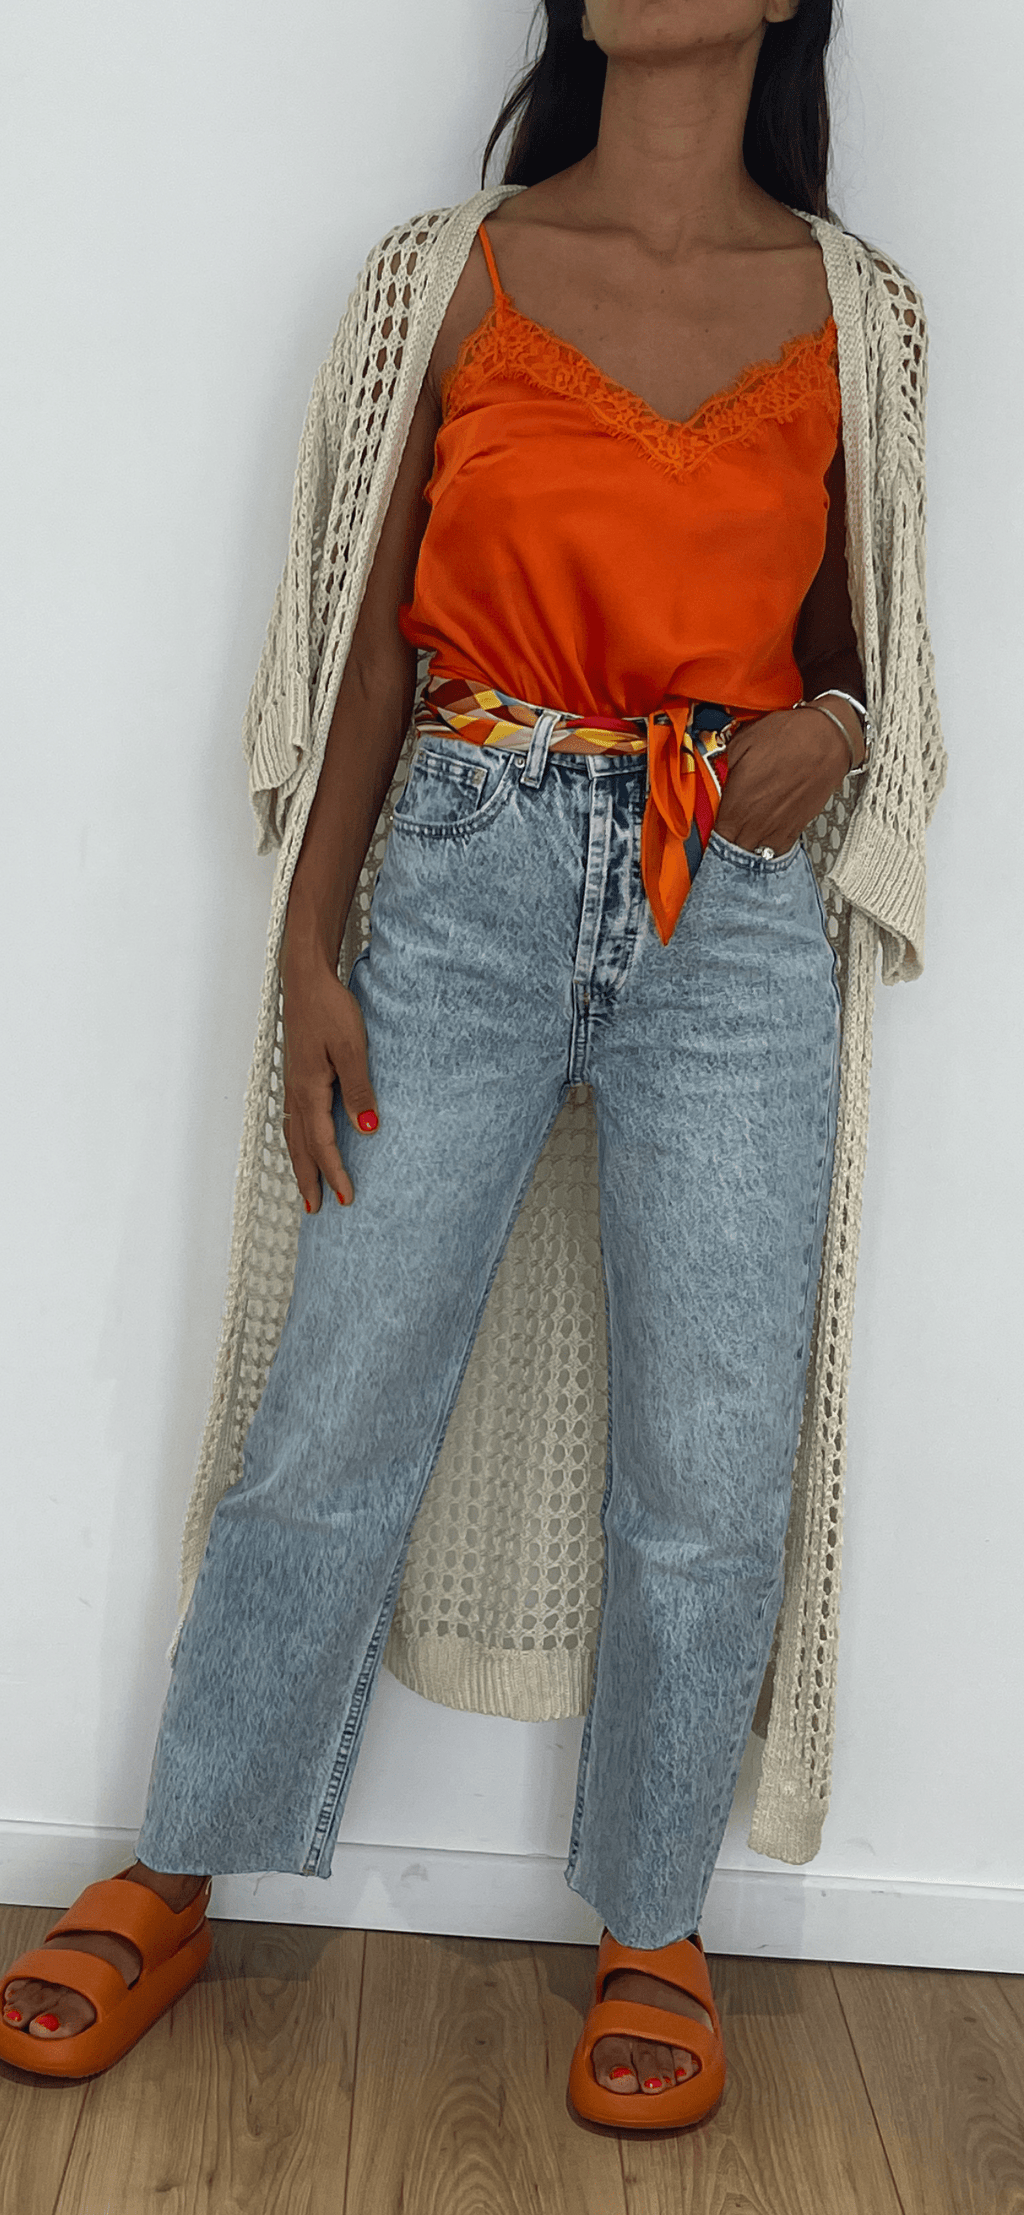 Jeans délavé à la coupe relax avec haut orange et accessoires colorés pour une tenue quotidienne vivante